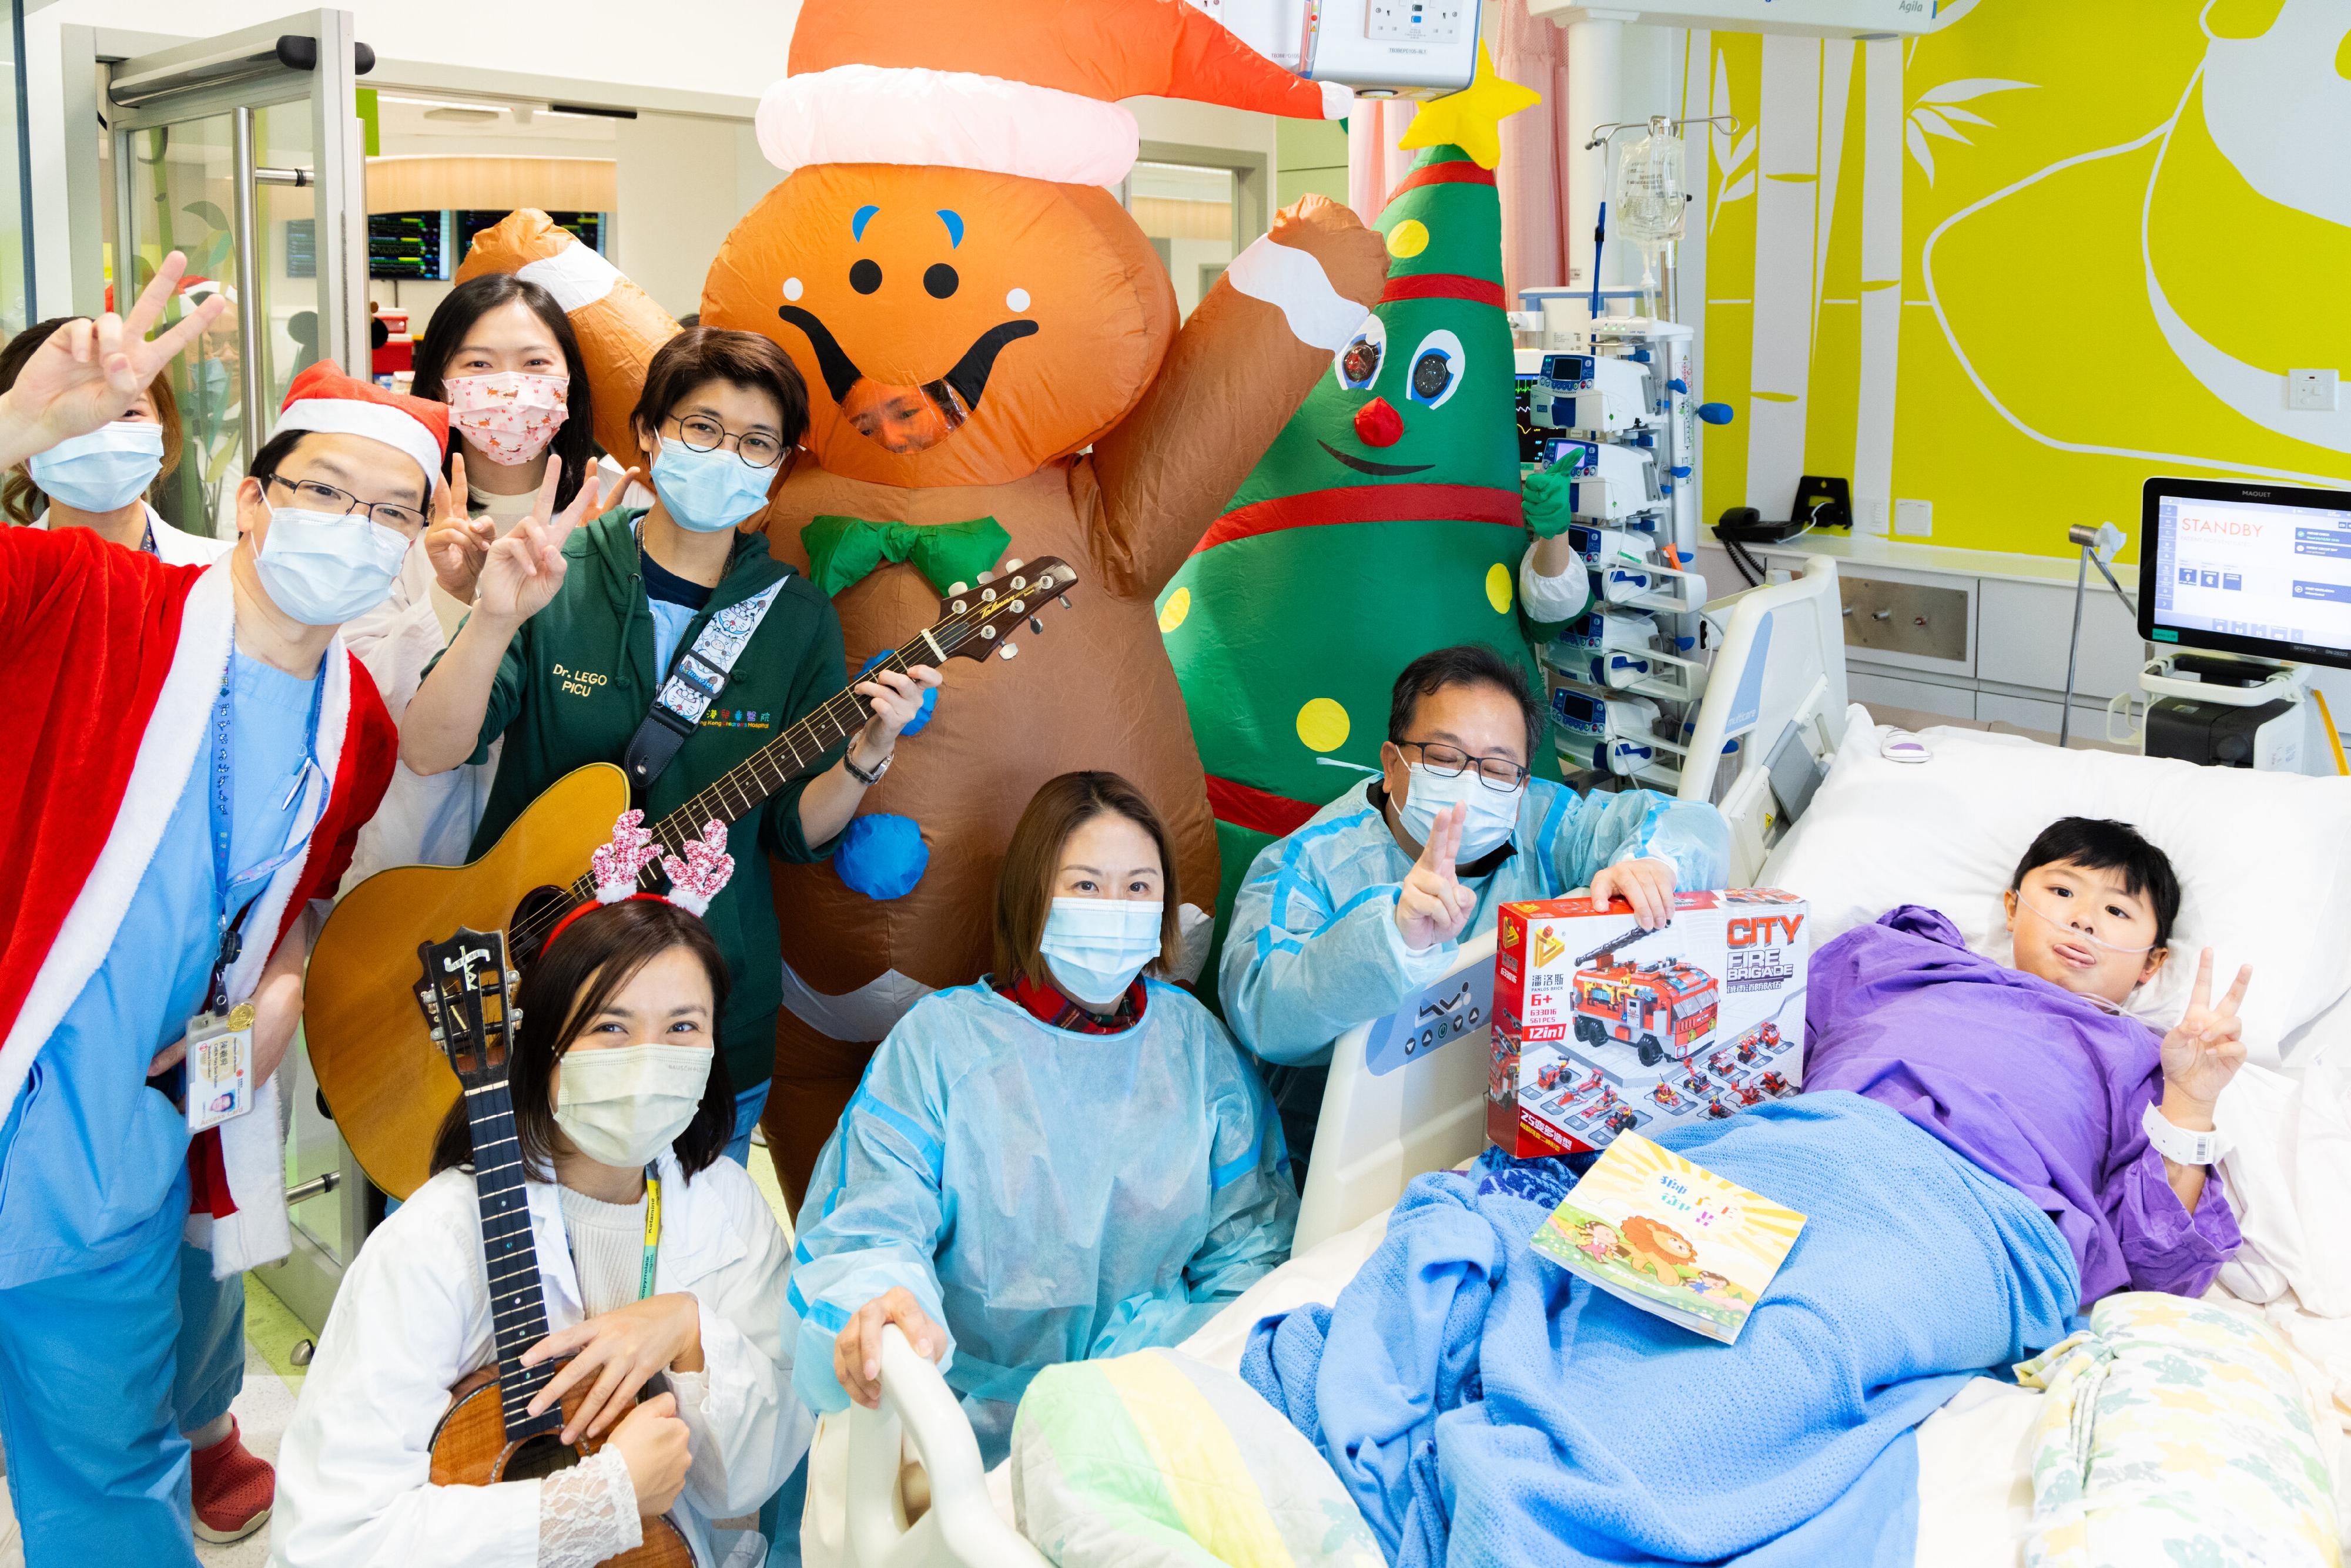 一班香港儿童医院的医护人员在圣诞日悉心打扮，为仍然留院的病童和家长报佳音及大派惊喜礼物，送上节日祝福。
